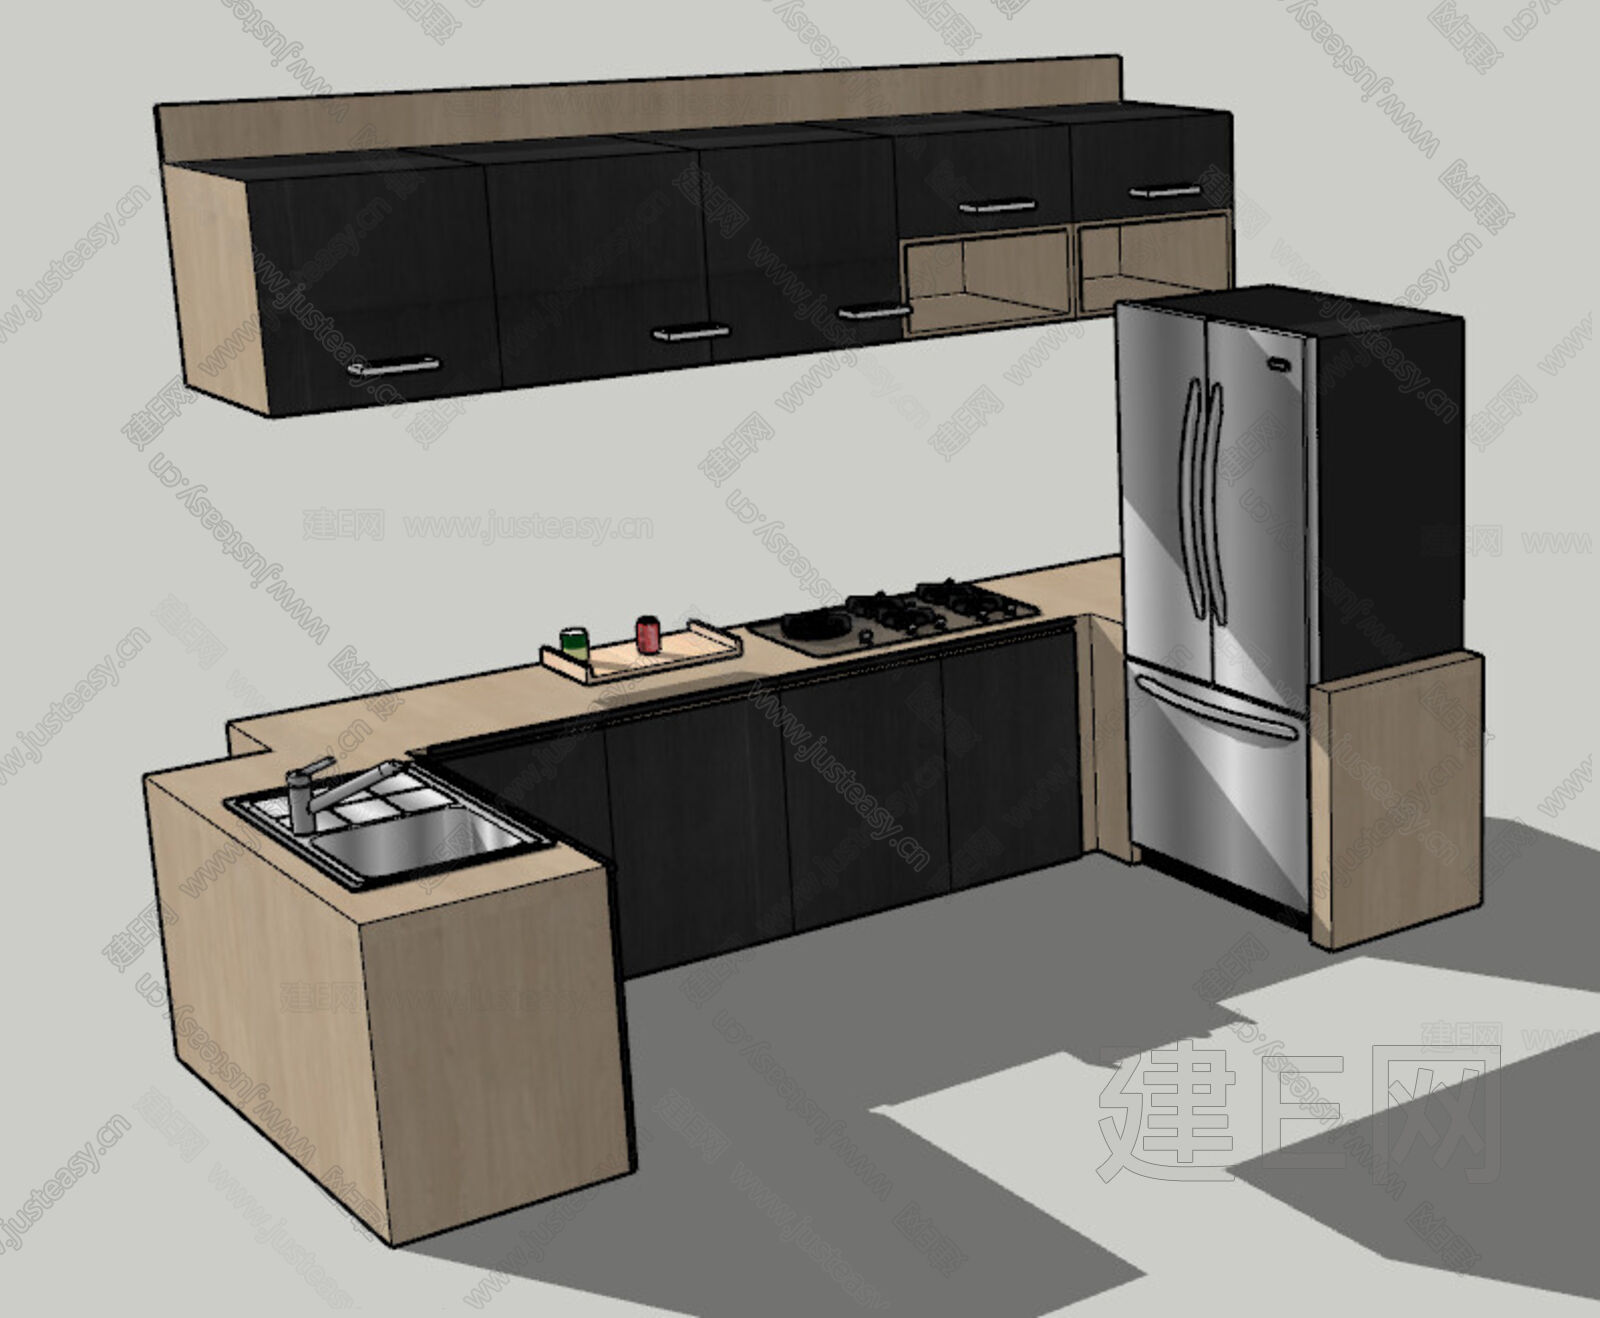 【现代厨房3d模型】建E网_现代厨房3d模型下载[ID:112740608]_打造3d现代厨房模型免费下载平台